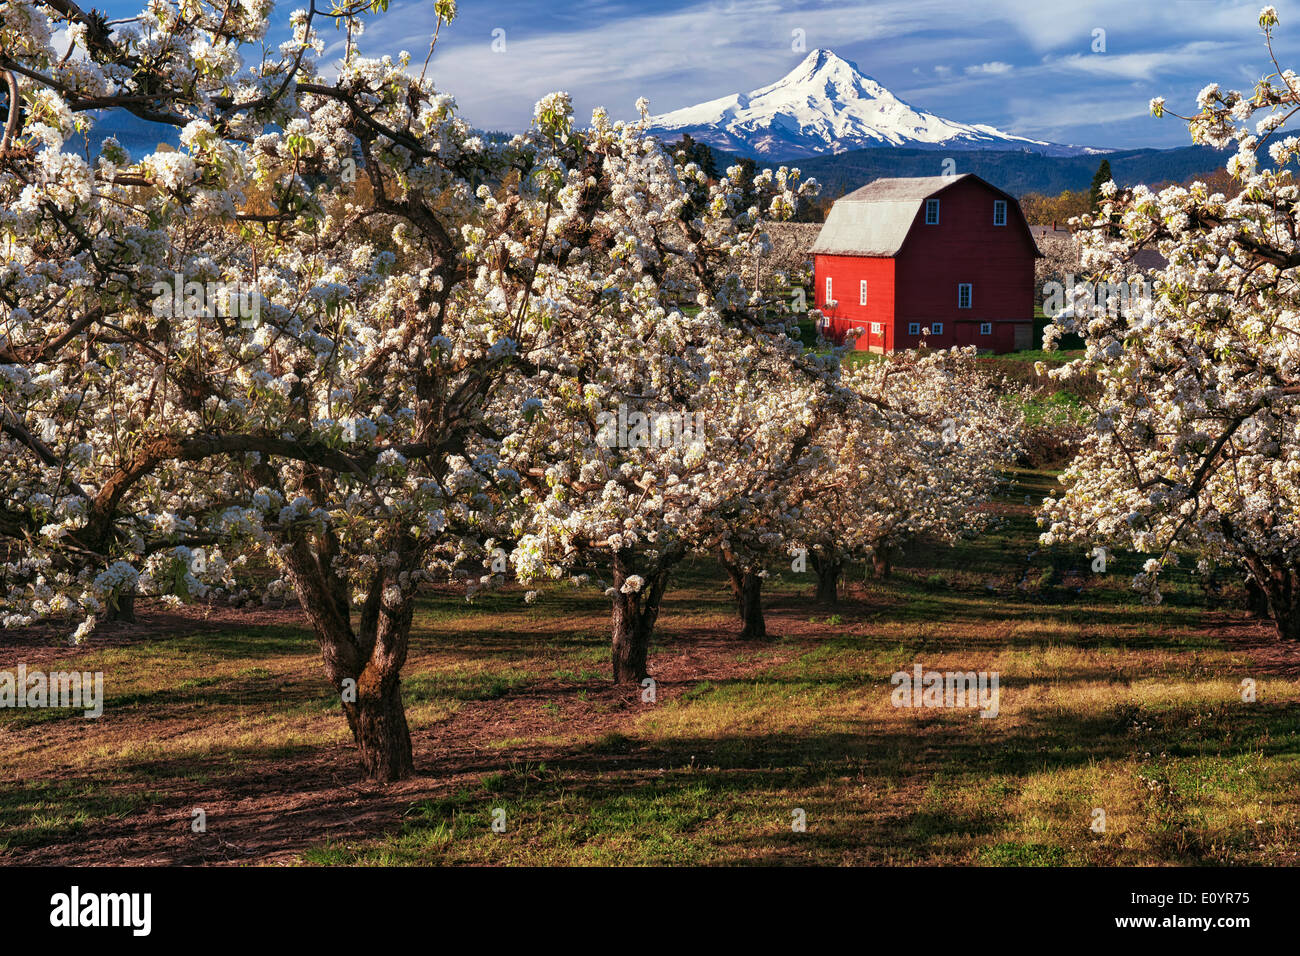 Beau matin d'avril dans la région de Hood River Valley avec le pic de floraison des les vergers de poiriers et de l'Oregon, le plus haut sommet de Mt Hood. Banque D'Images